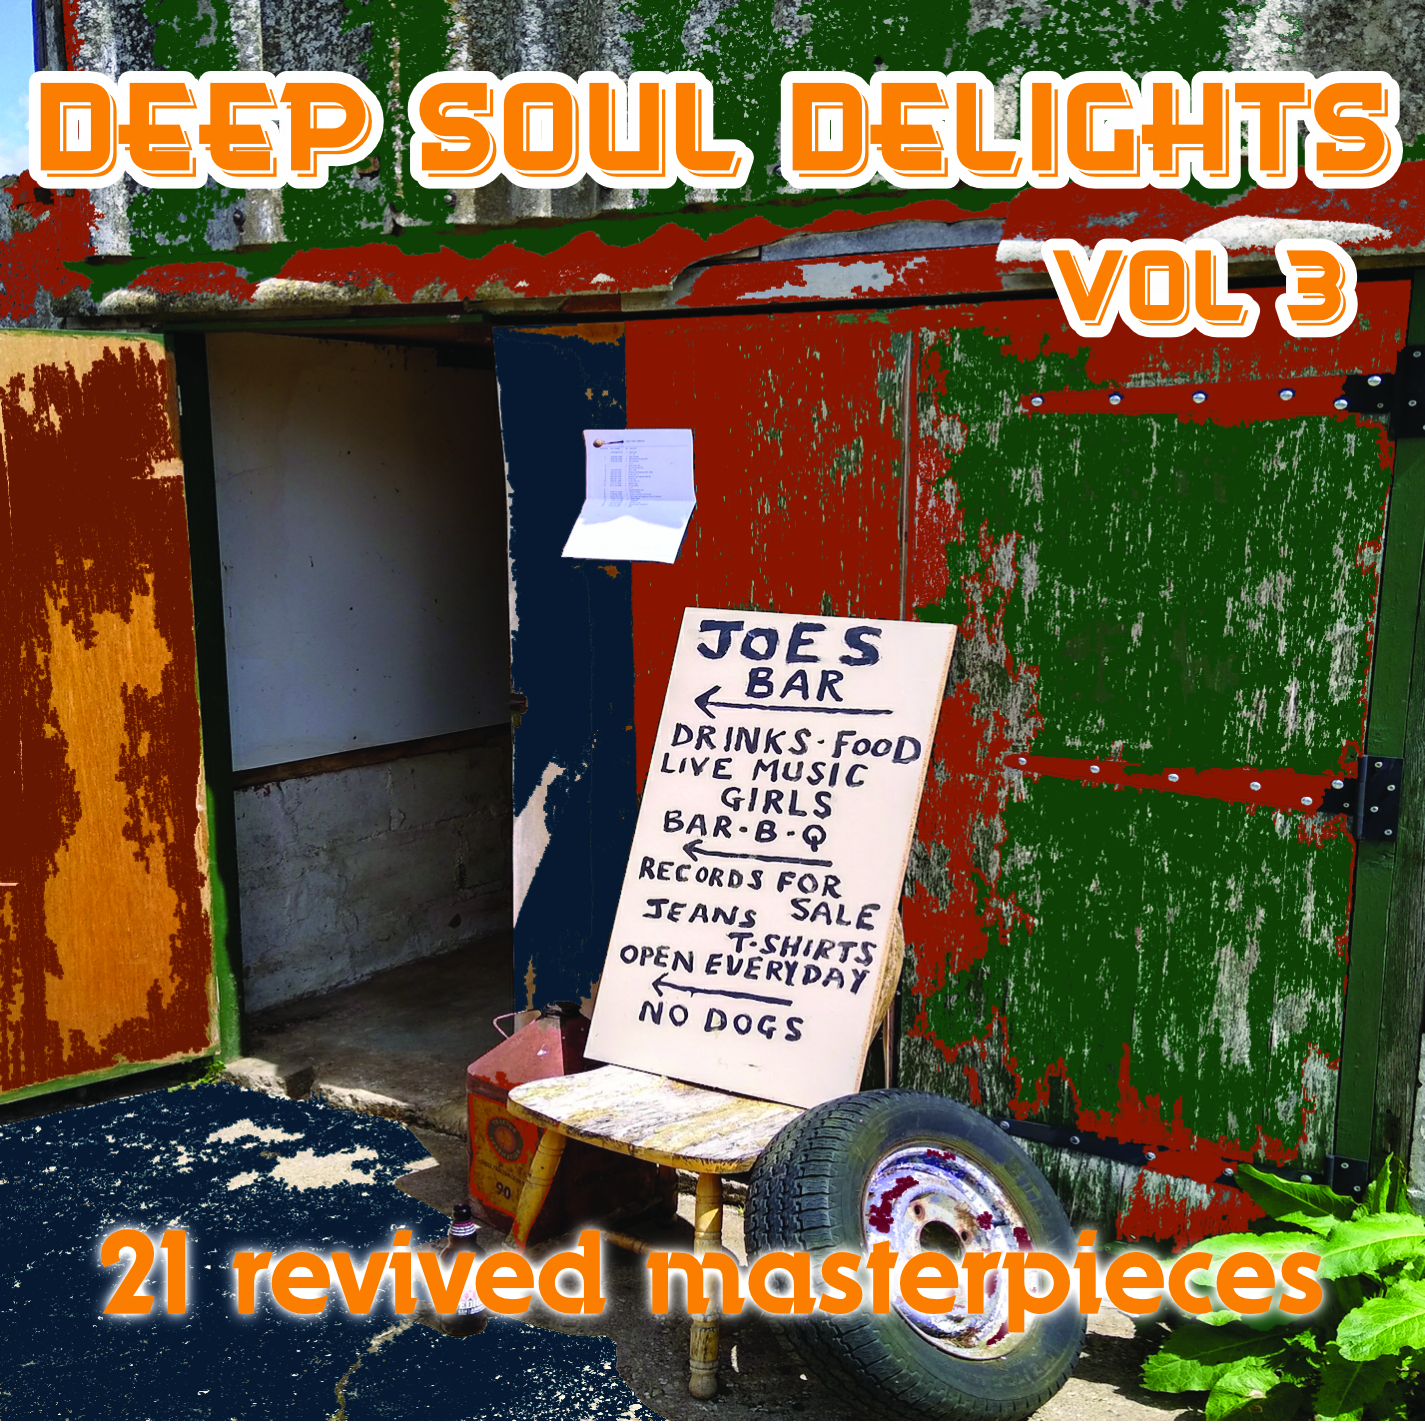 Deep Soul Delights Vol 3